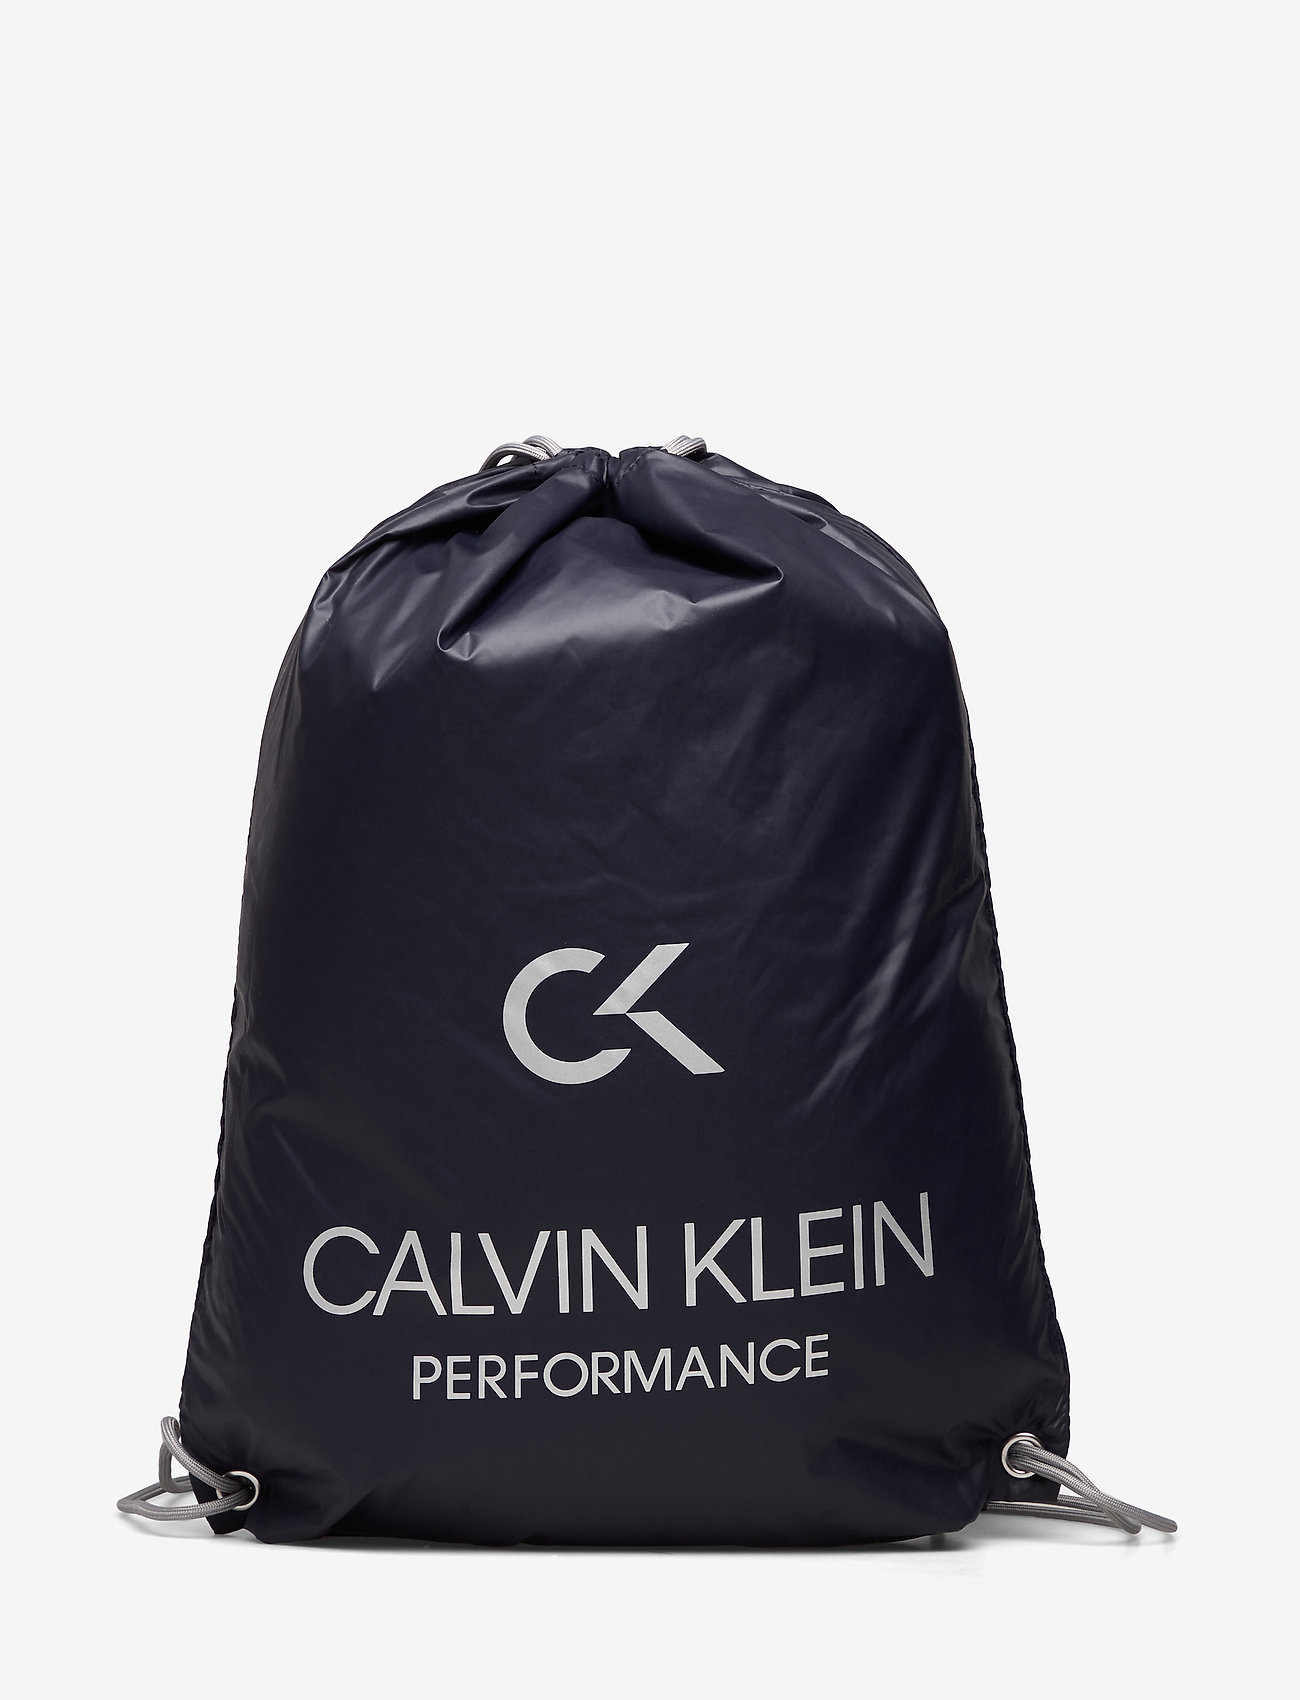 calvin klein sport bag